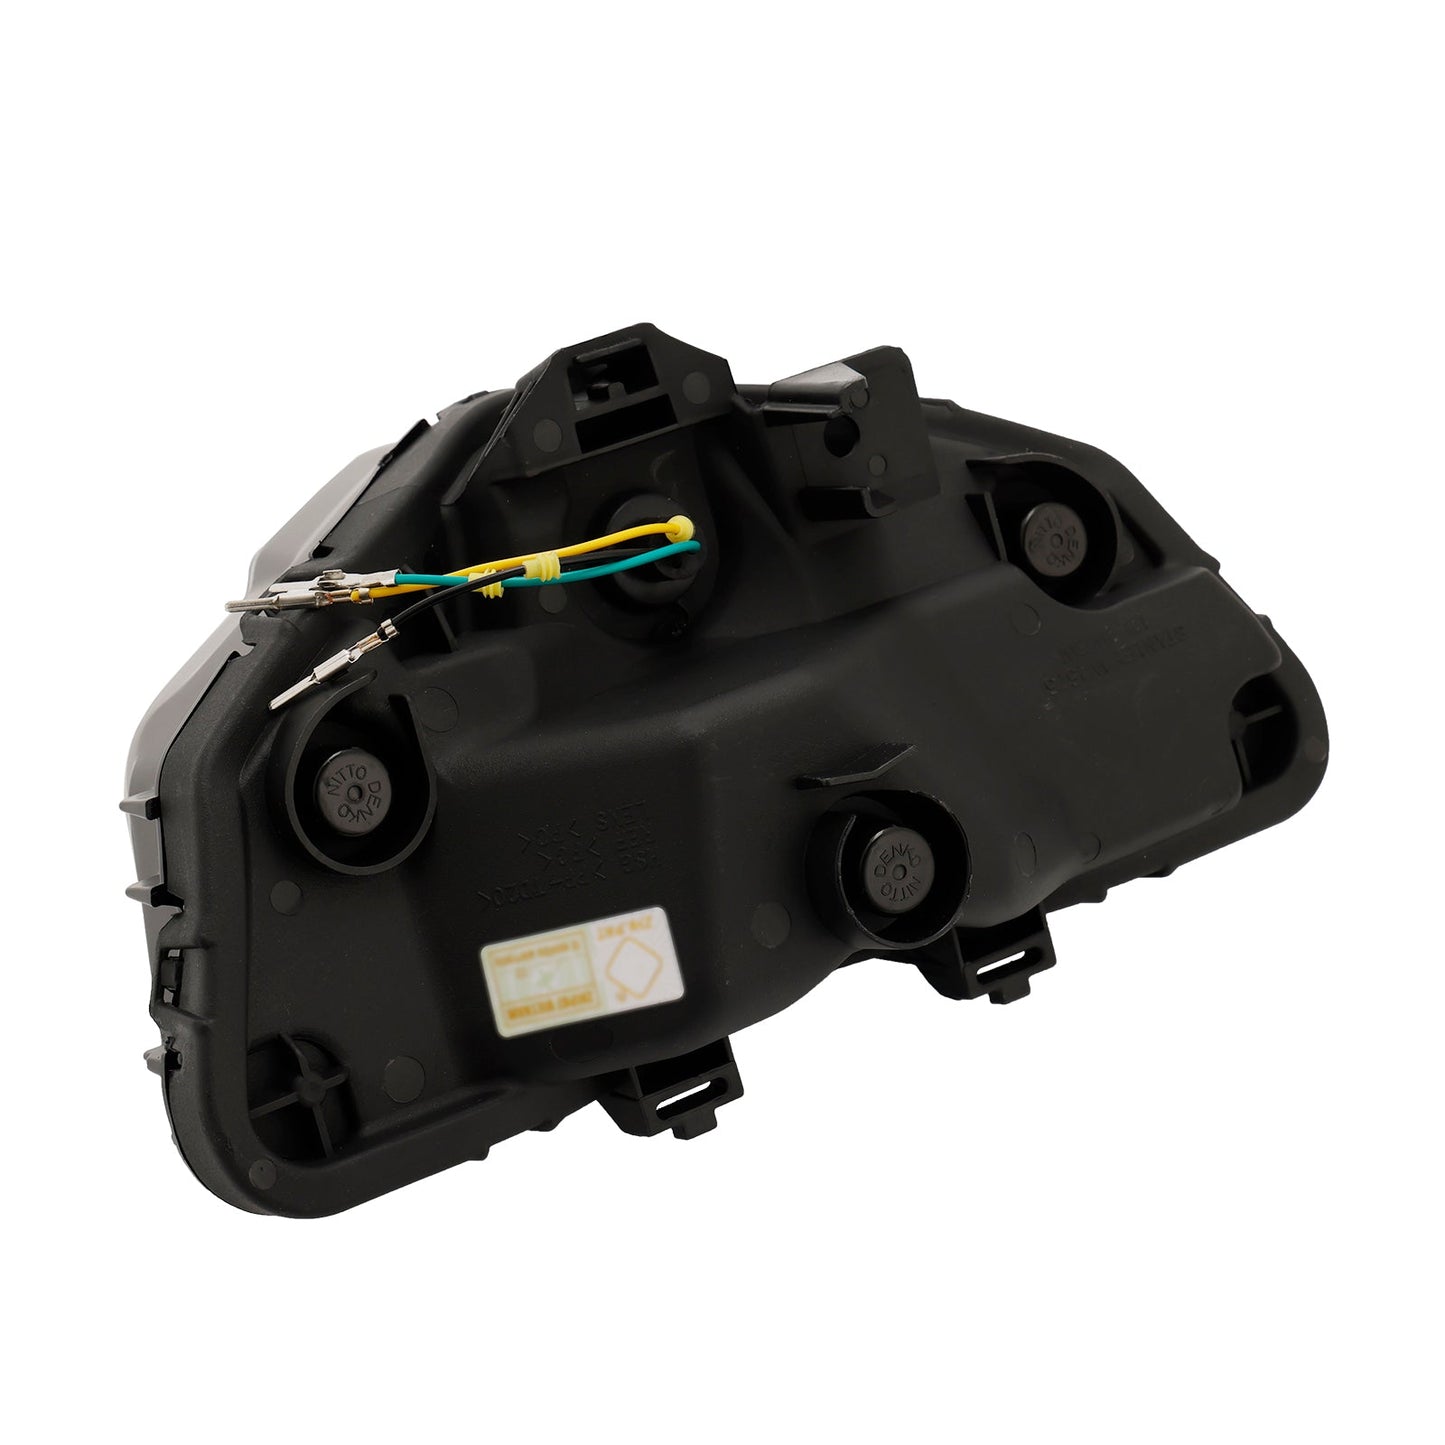 Protezione LED per fari anteriori per griglia anteriore Yamaha Y15ZR V2 2019-2021